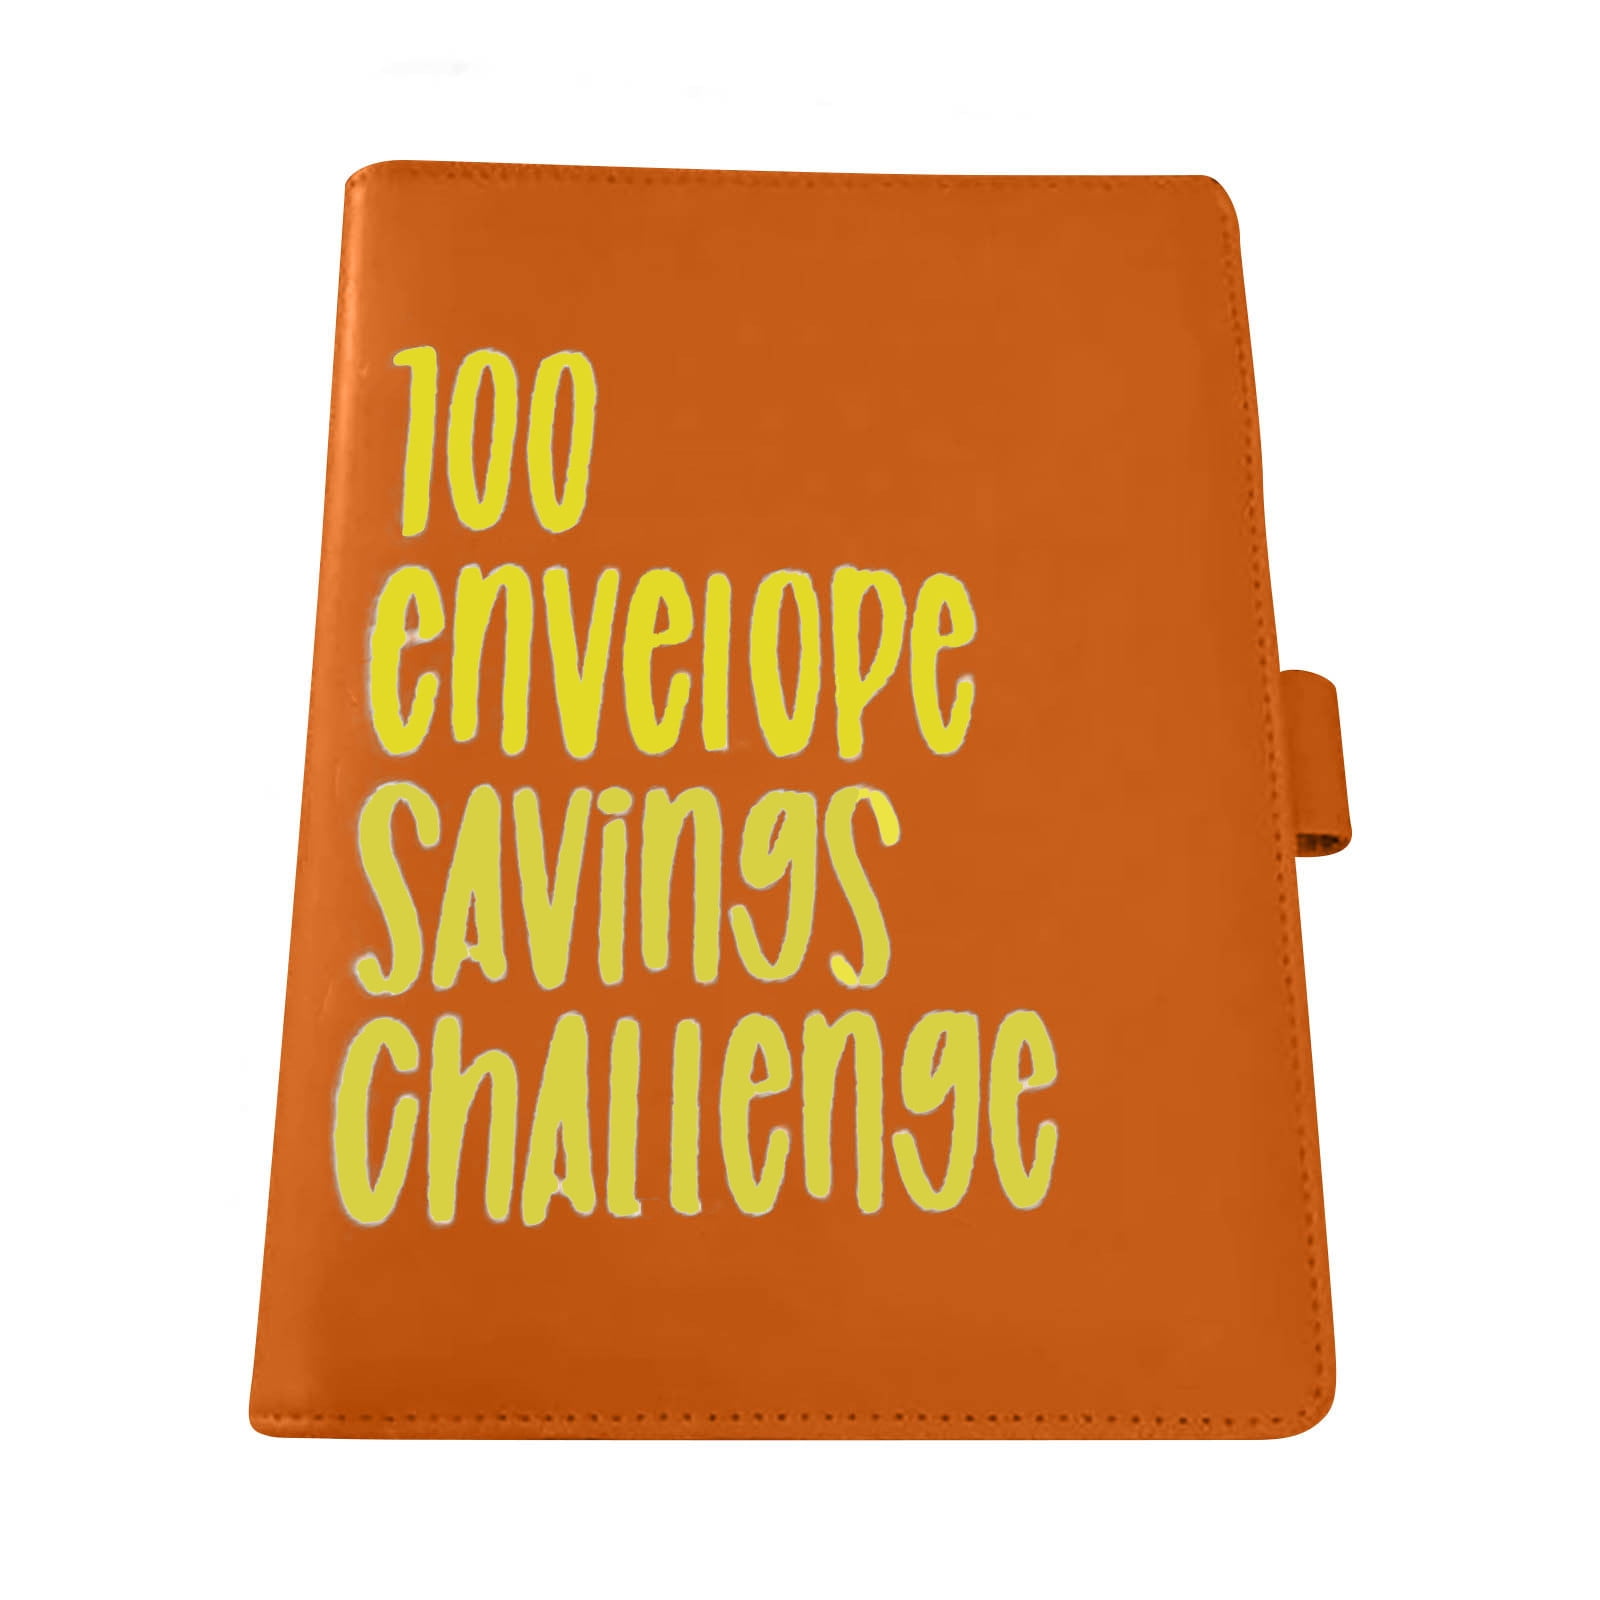 Money Savings Challenges Binder 52 Week Savings Challenges Book with  Envelope